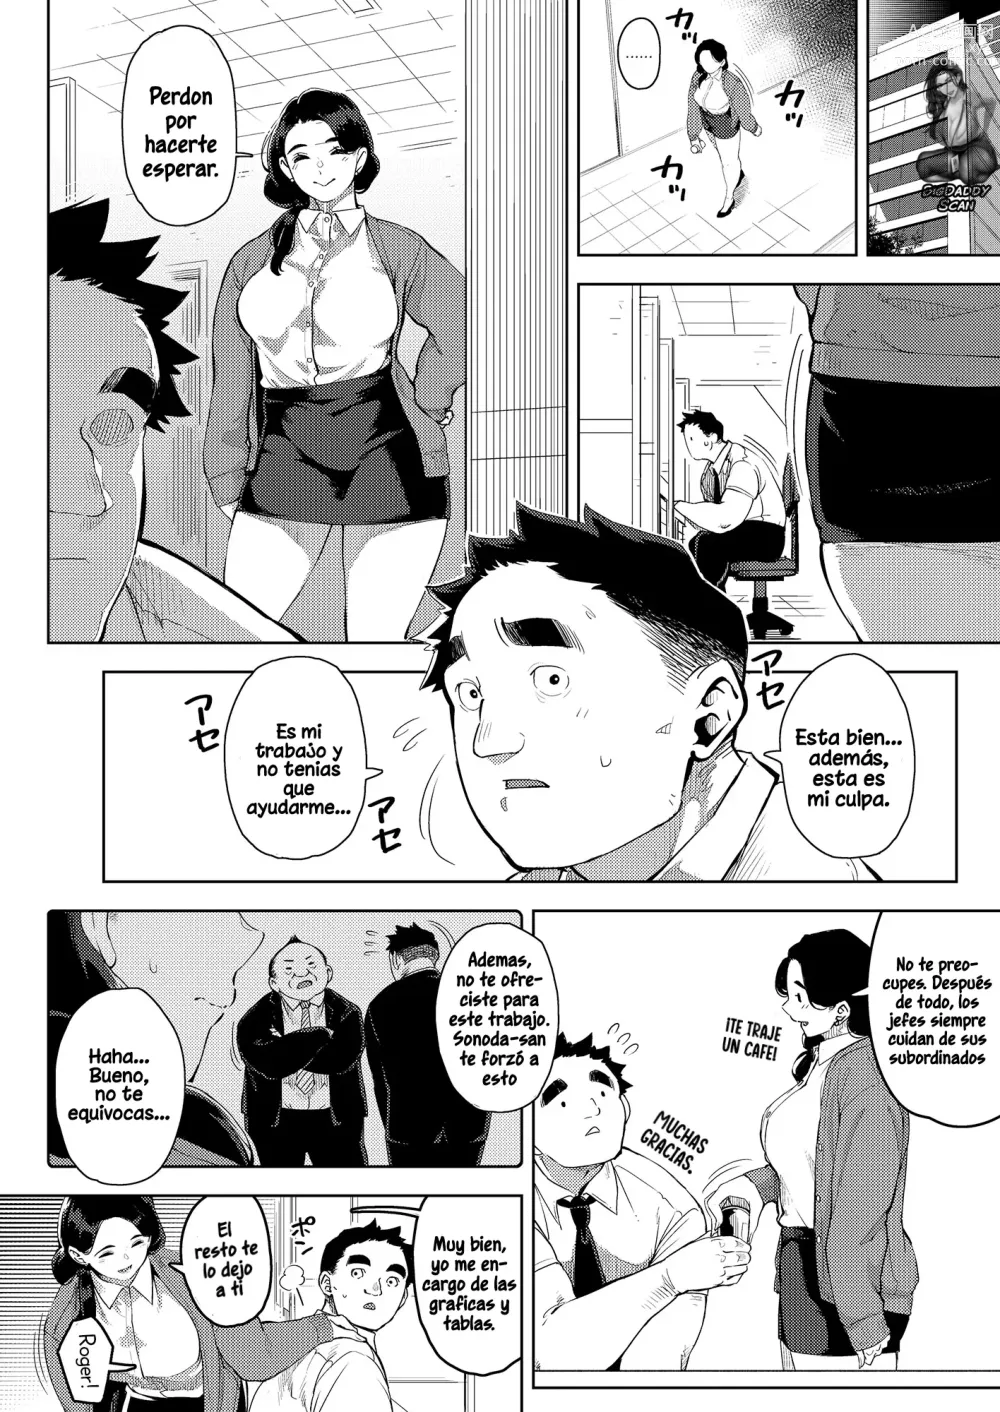 Page 3 of doujinshi La jefa casada Yumiko teniendo sexo con su subordinado 2